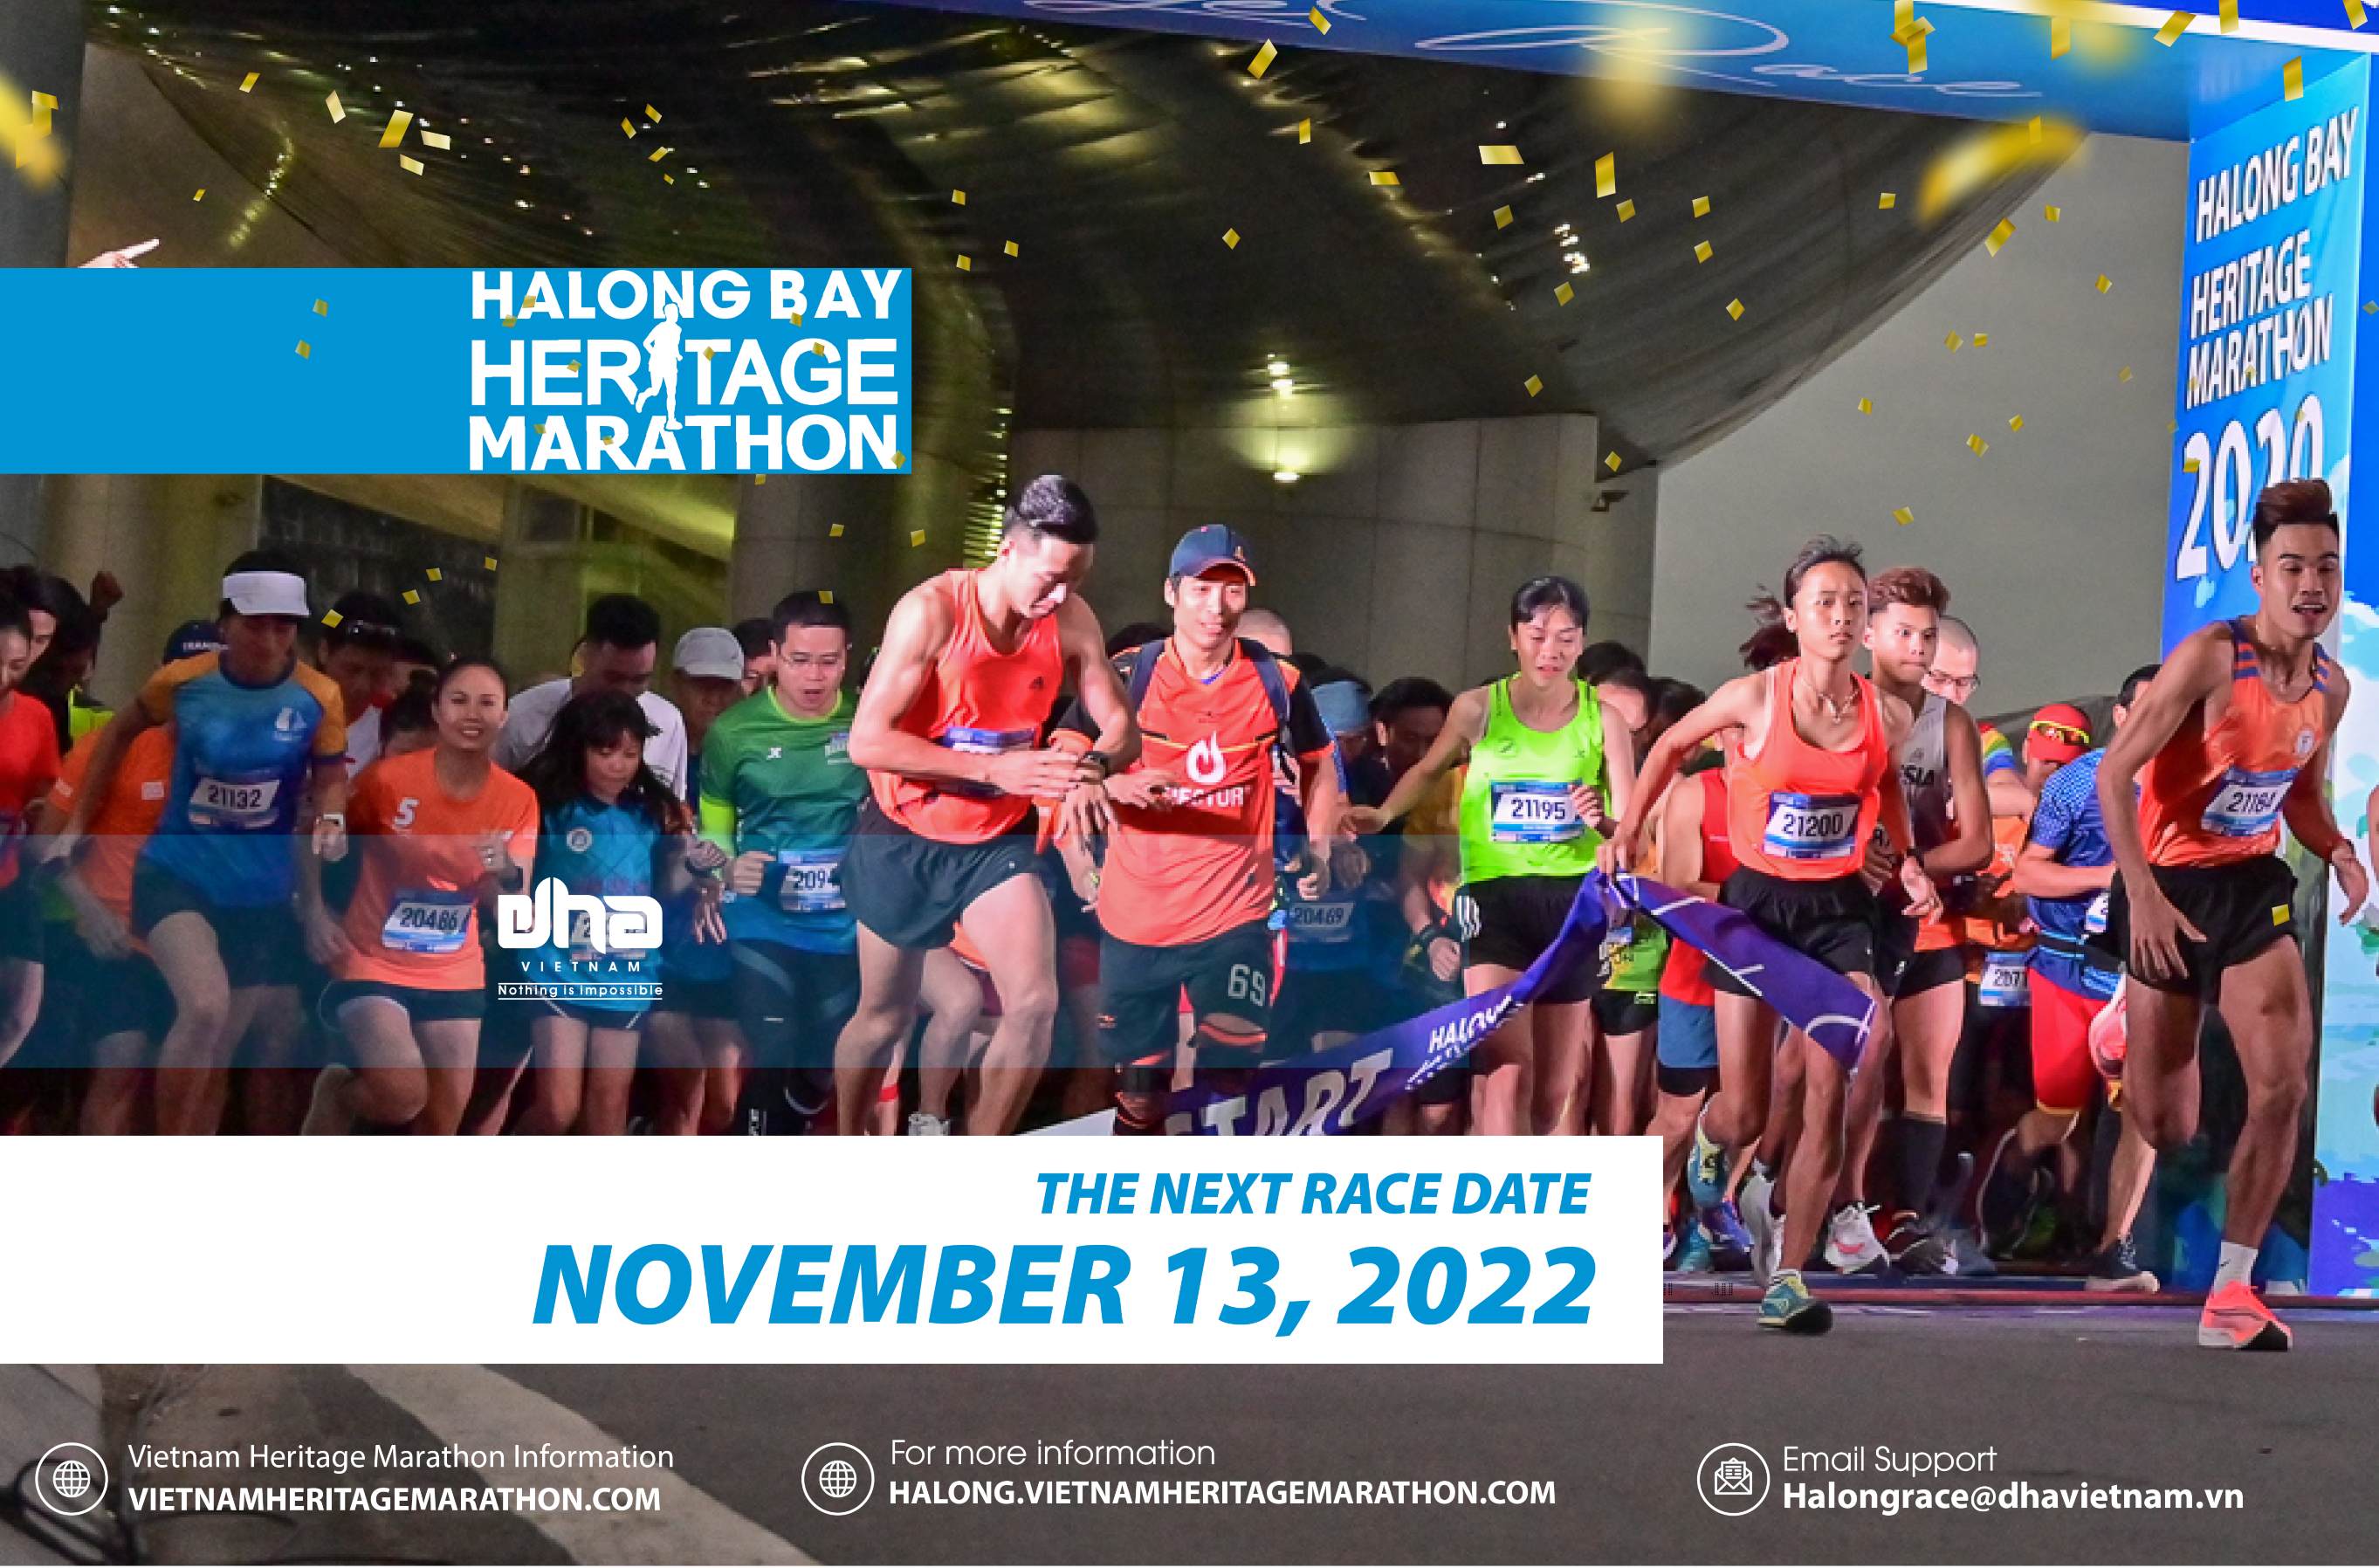 Halong Bay Heritage Marathon 2022 Chốt Ngày Thi Đấu 13/11